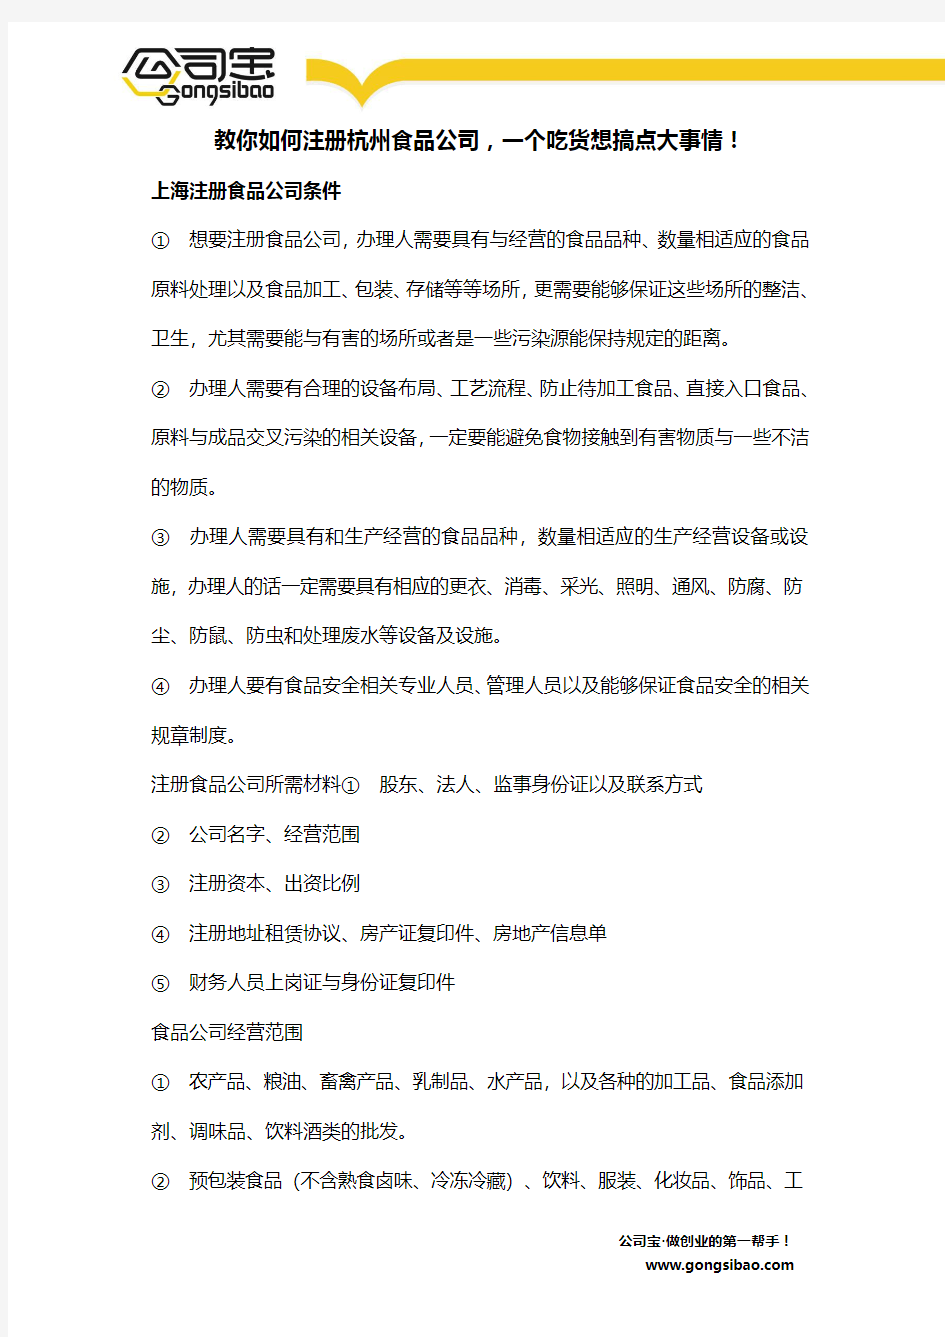 教你如何注册杭州食品公司,一个吃货想搞点大事情!